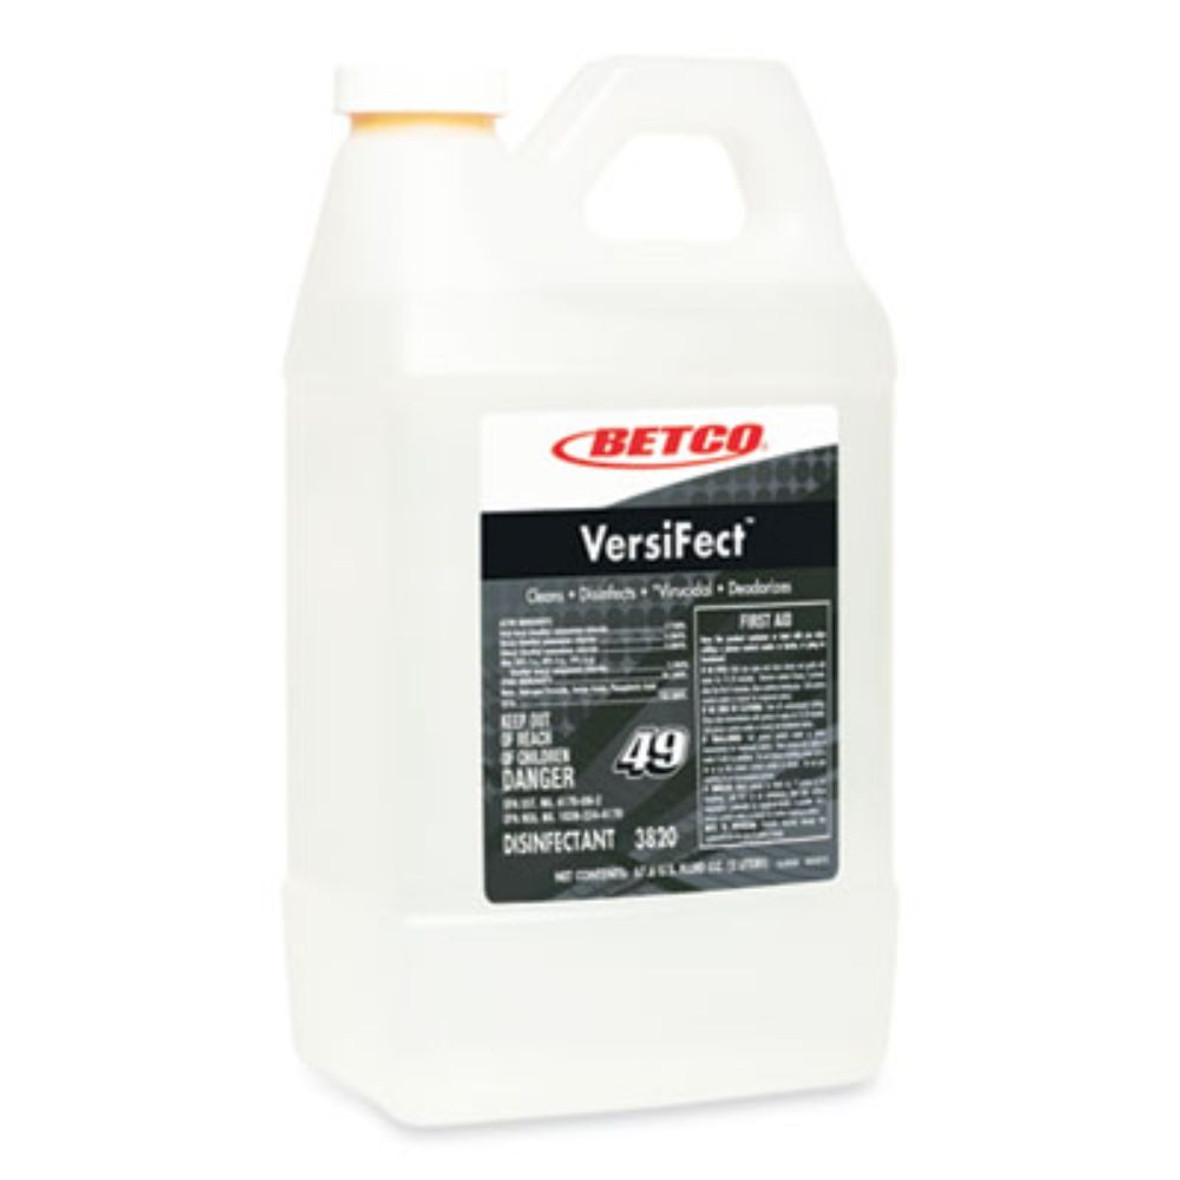 Betco® VersiFect Cleaner Disinfectant, Fresh Scent